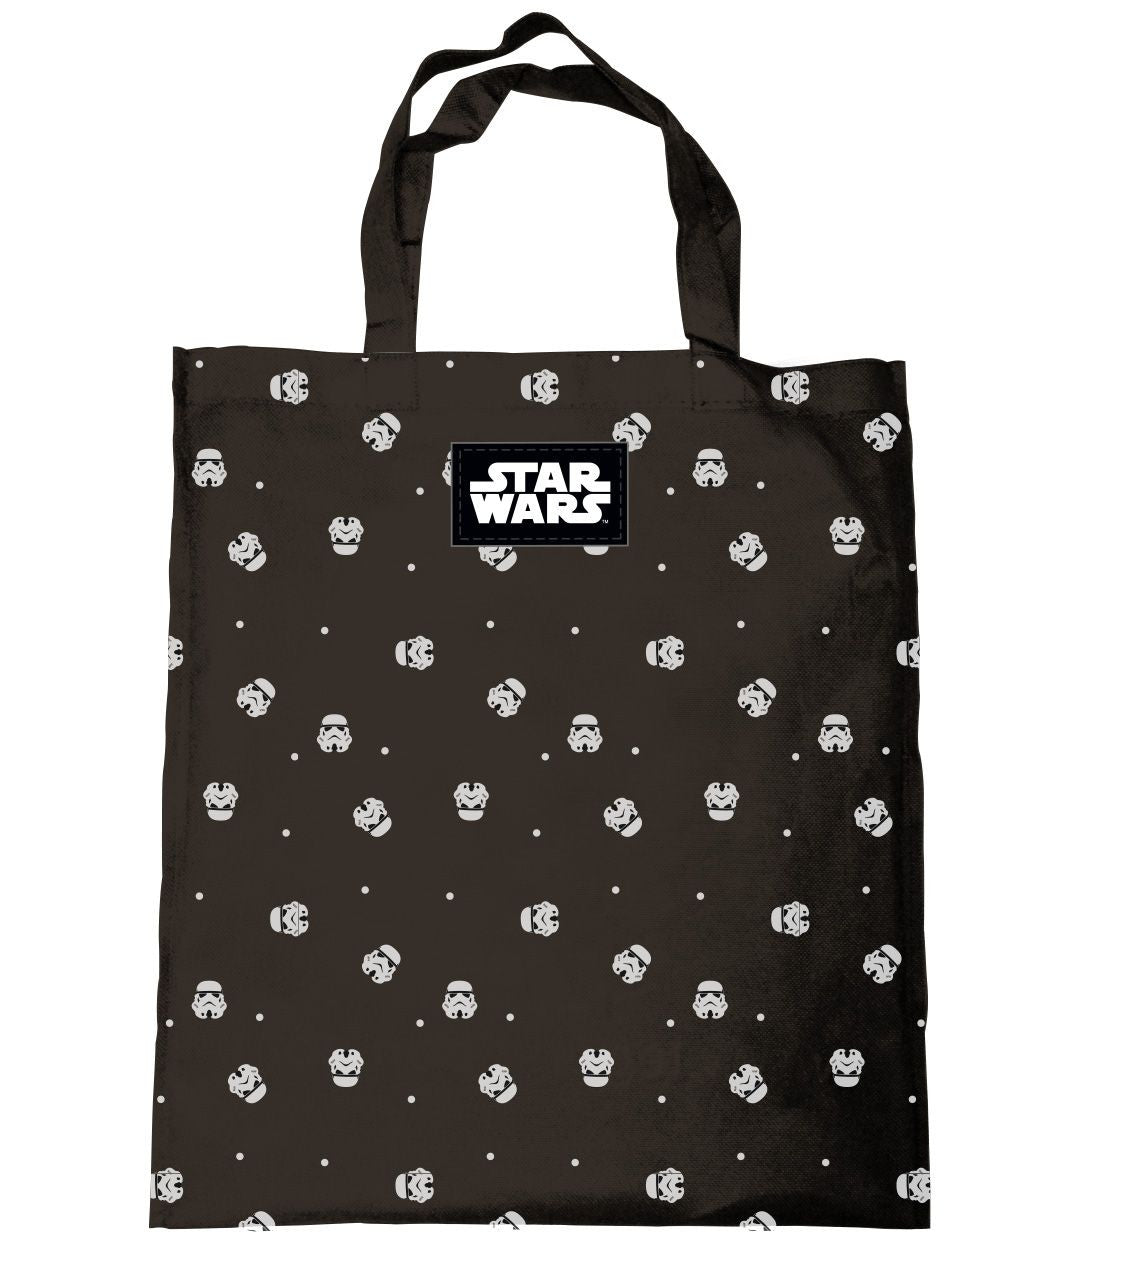 Star Wars Tote Bag - Stormtrooper Heads